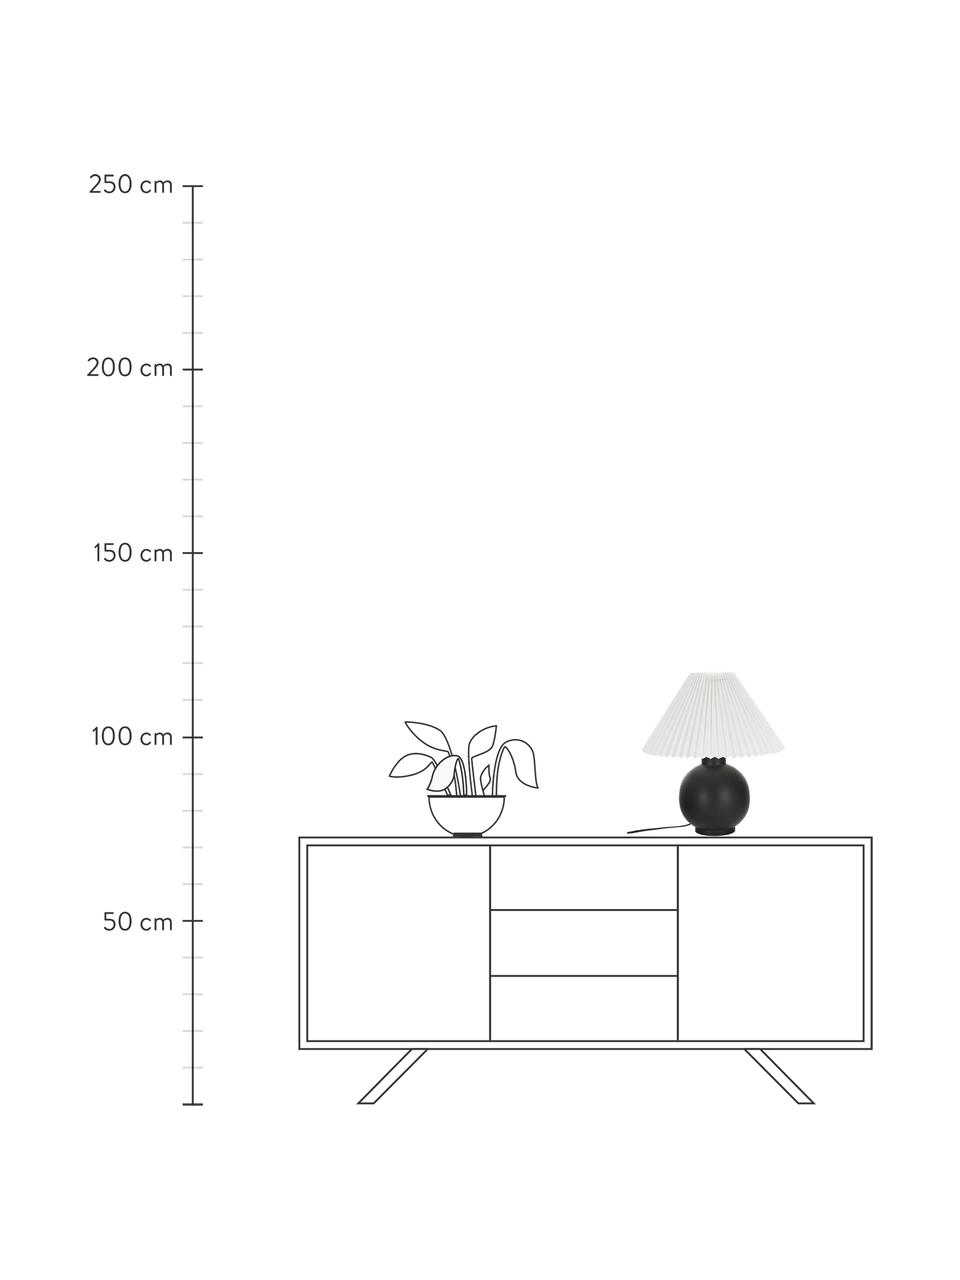 Lampa stołowa z ceramiki i plisowanym kloszem Vivid, Czarny, Ø 36 x W 40 cm